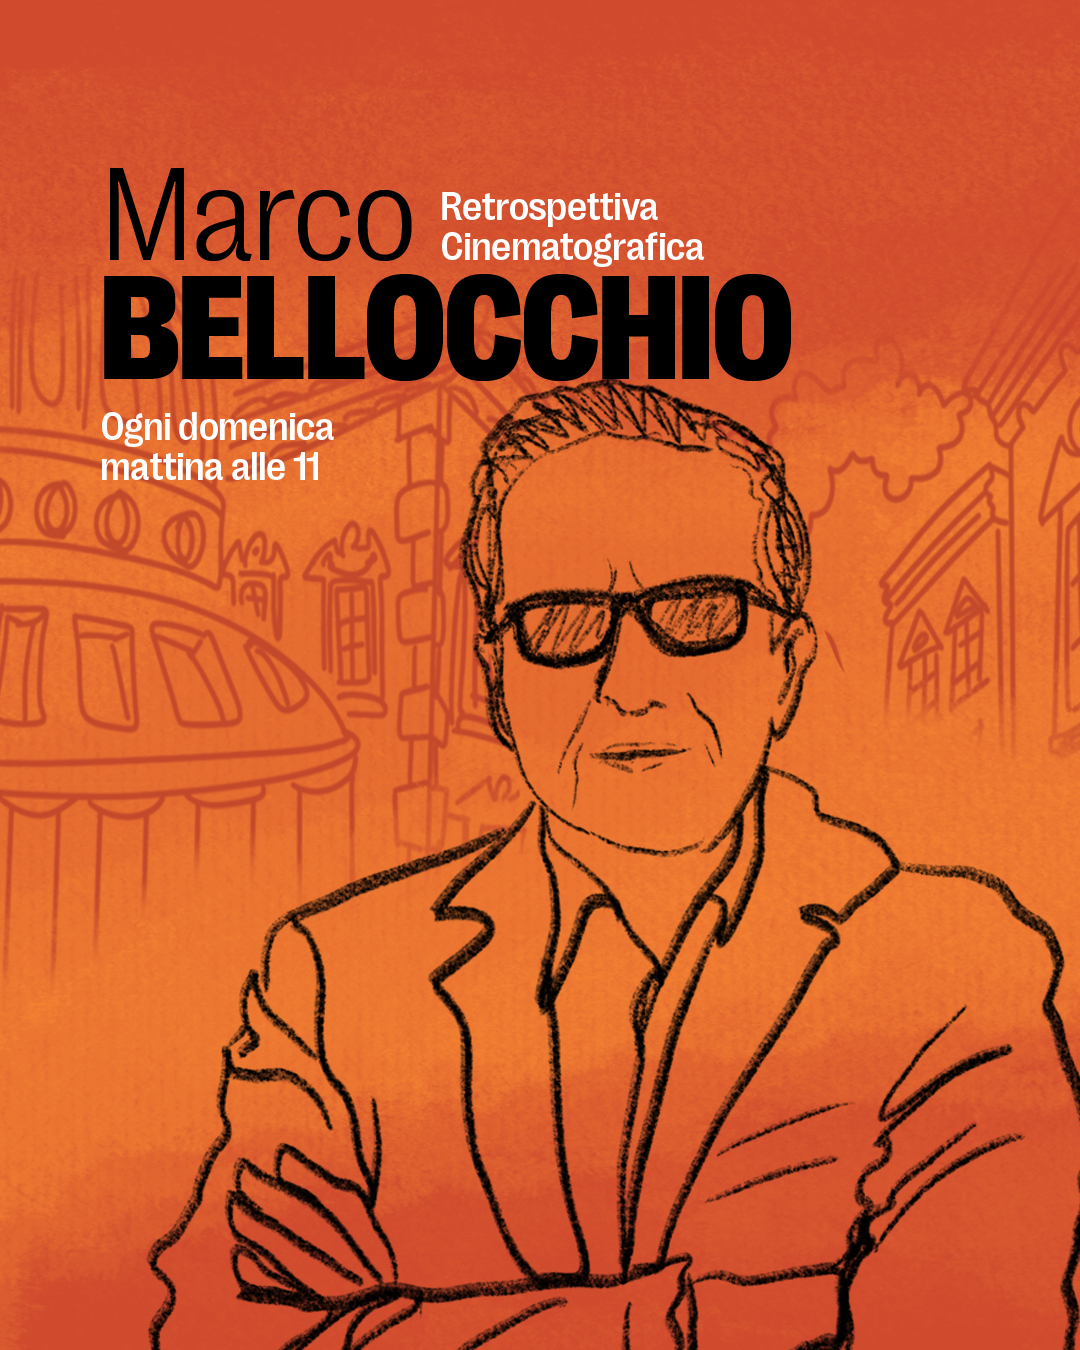 Retrospettiva Marco Bellocchio